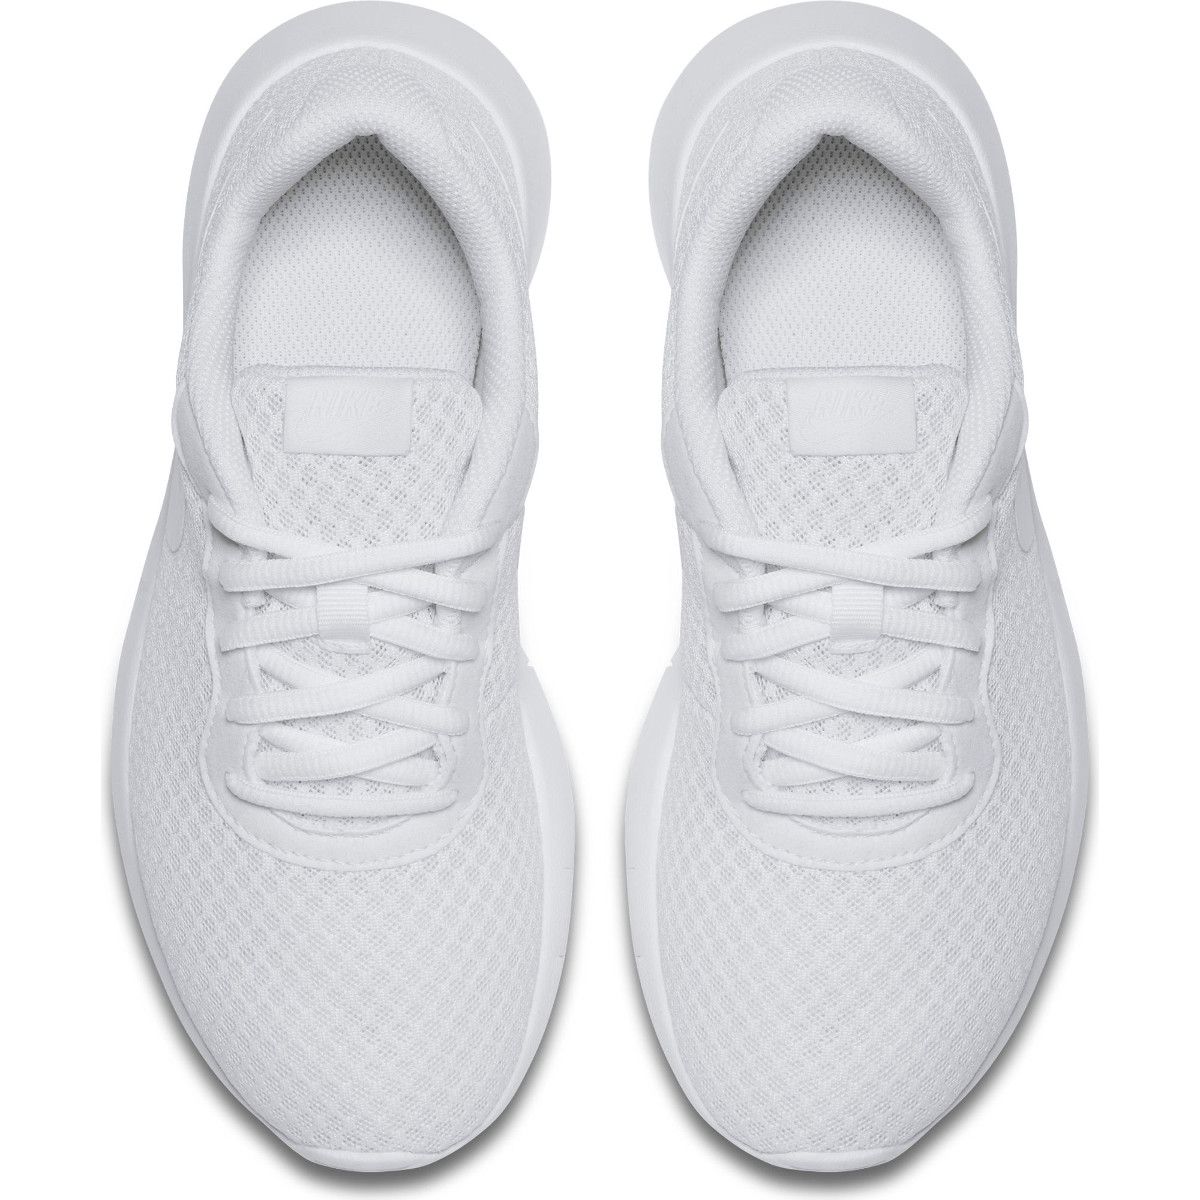 Nike Tanjun (GS) Girls' Sports Shoes 818384-111